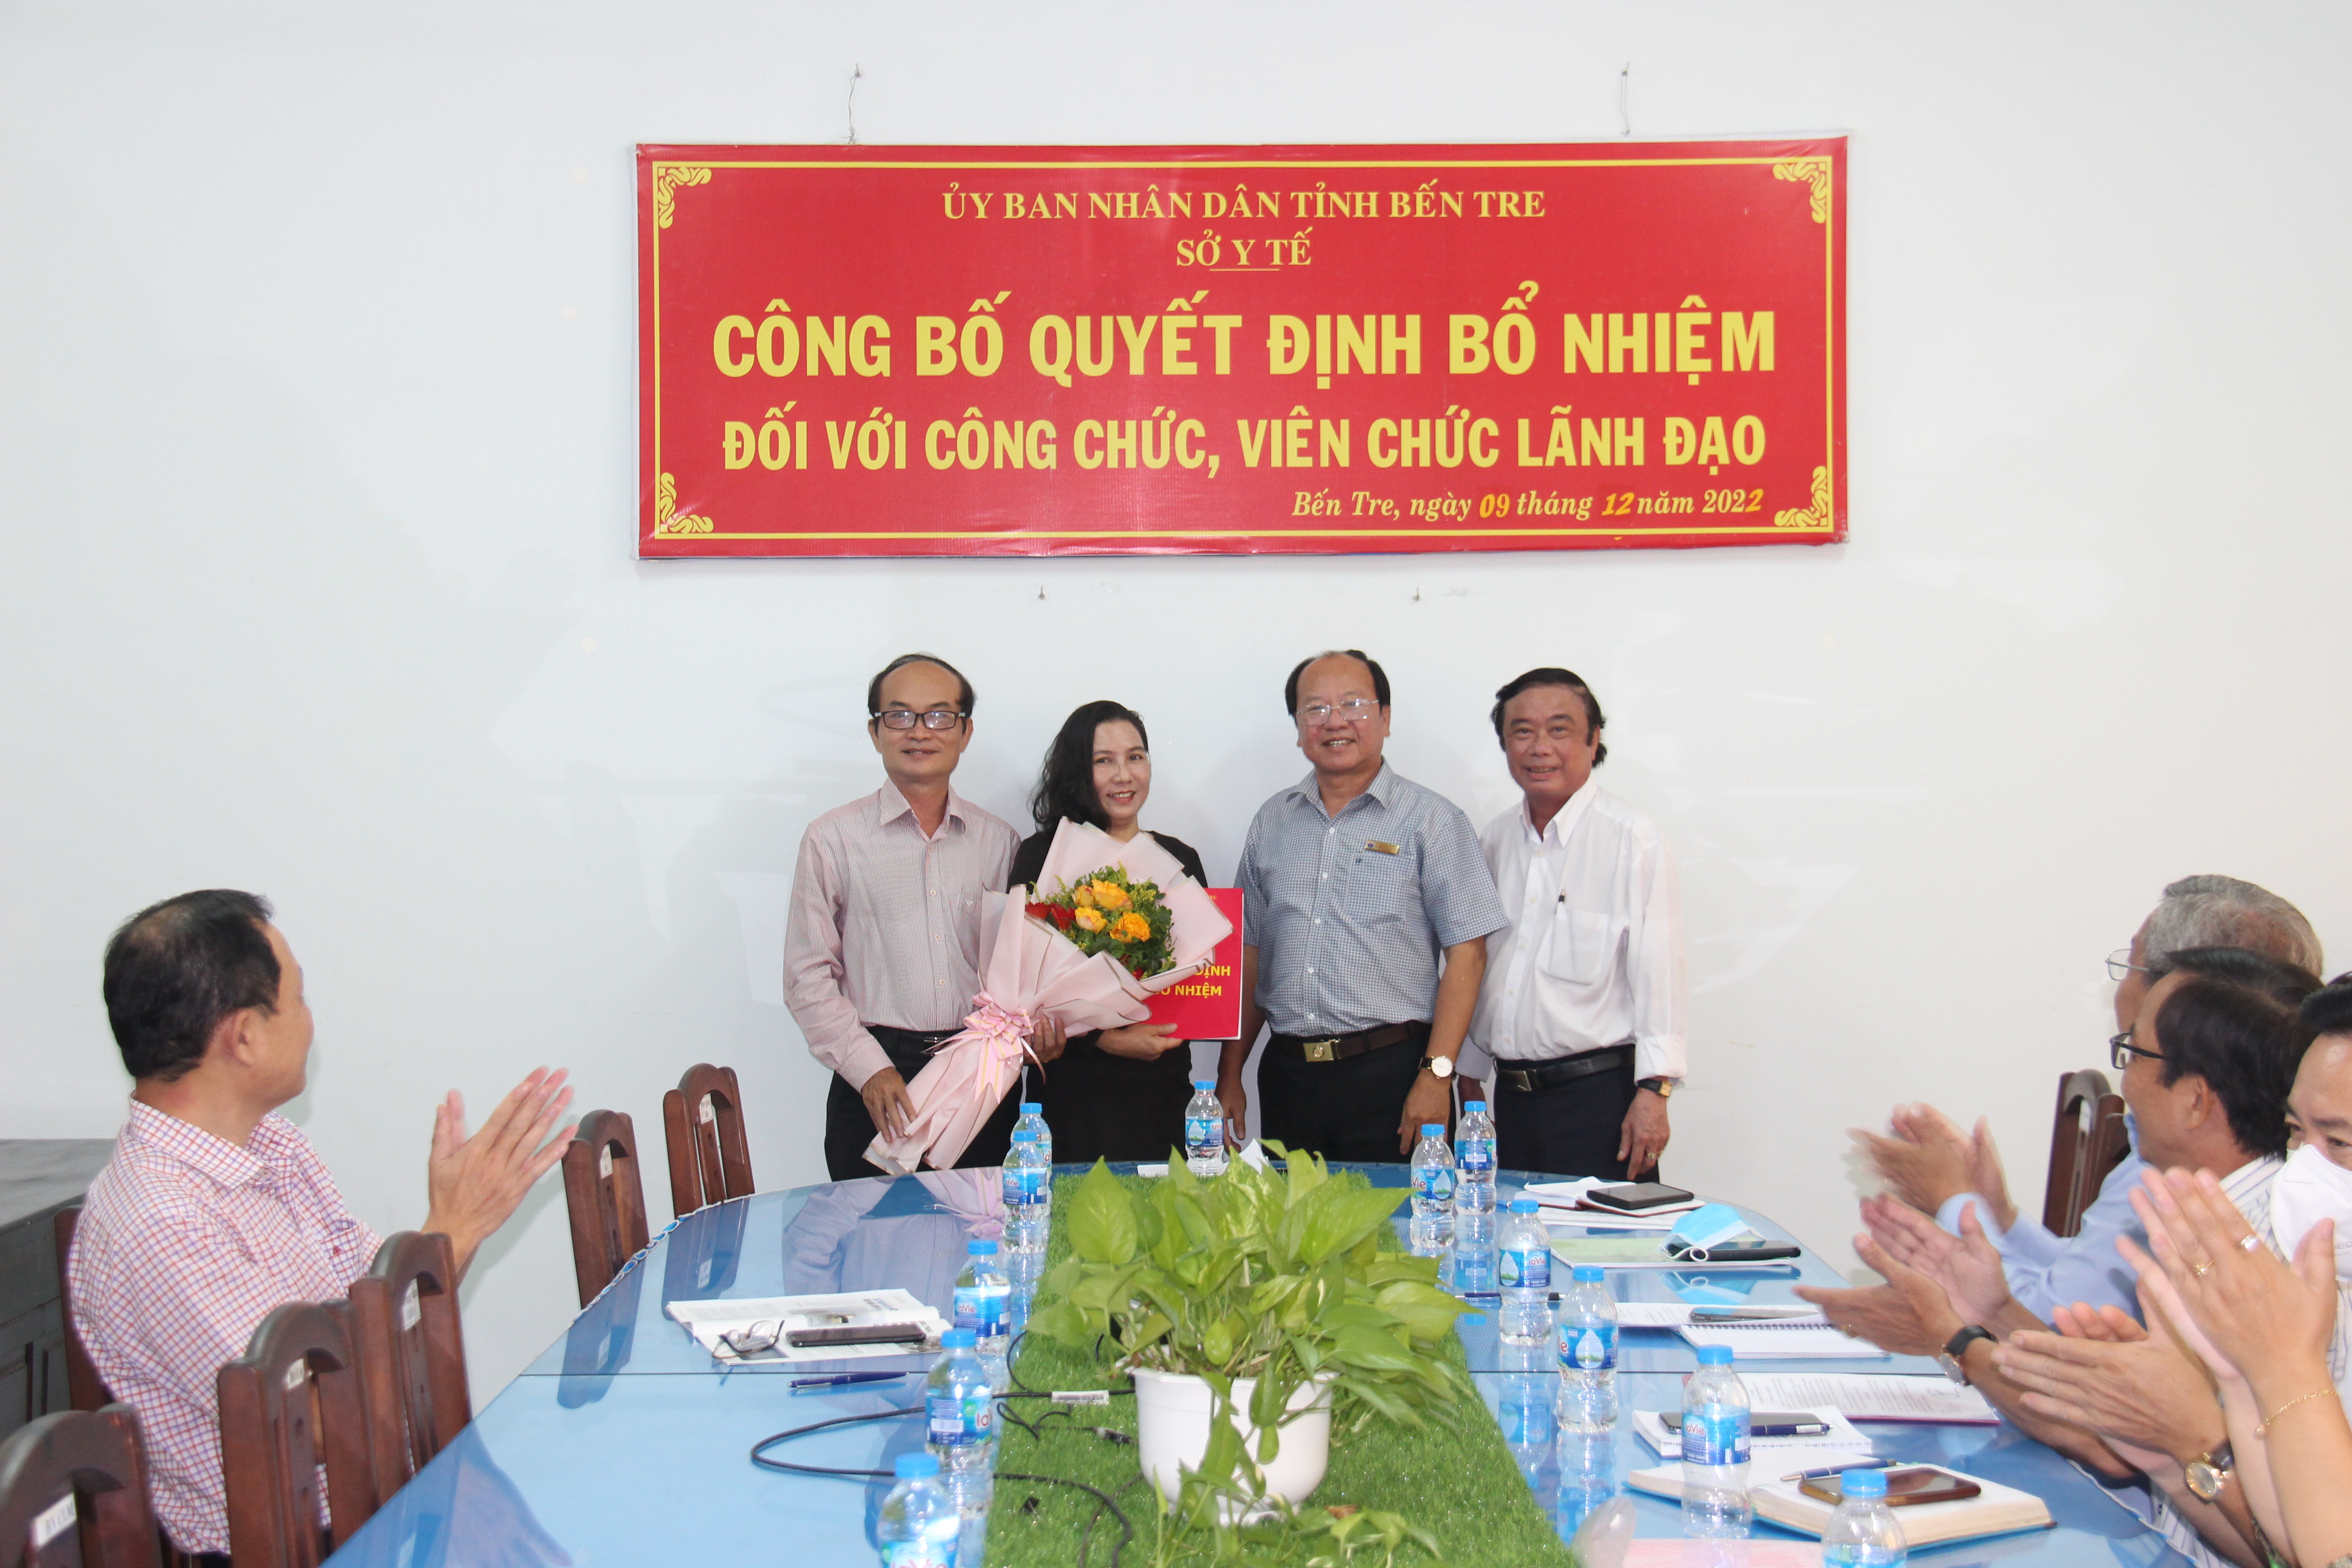 Ban giám đốc Sở Y tế, Công đoàn ngành trao quyết định và tặng hoa cho đ/c Đặng Thị Nguyệt